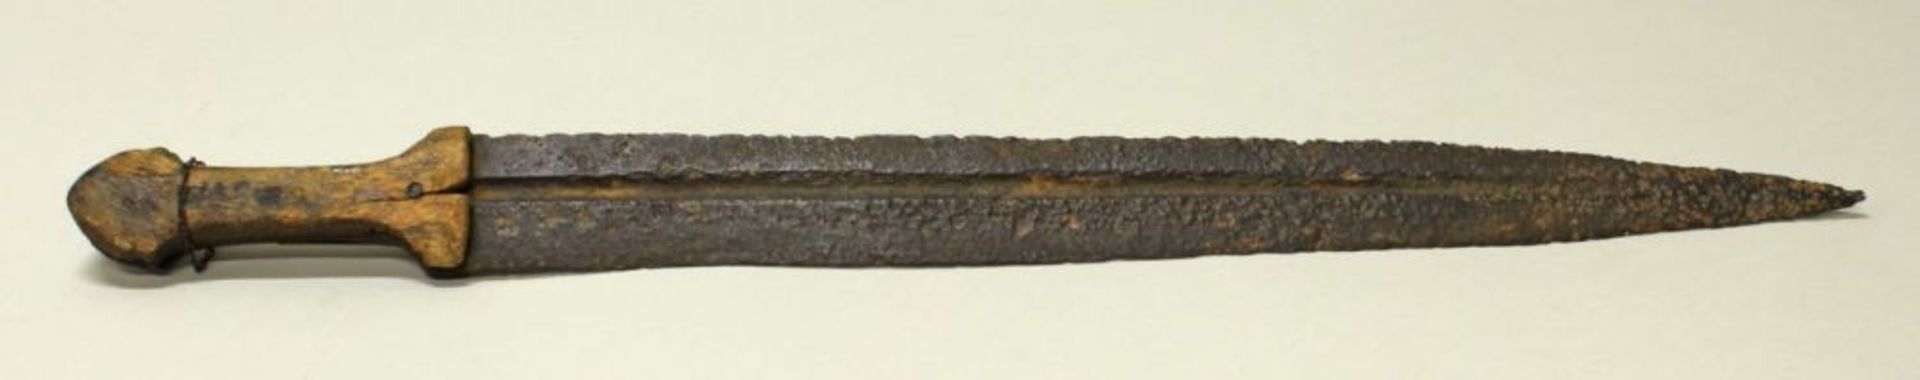 Reserve: 60 EUR        Schwert, Eisen, Holzgriff, Bodenfund, 59 cm hoch - Image 2 of 6